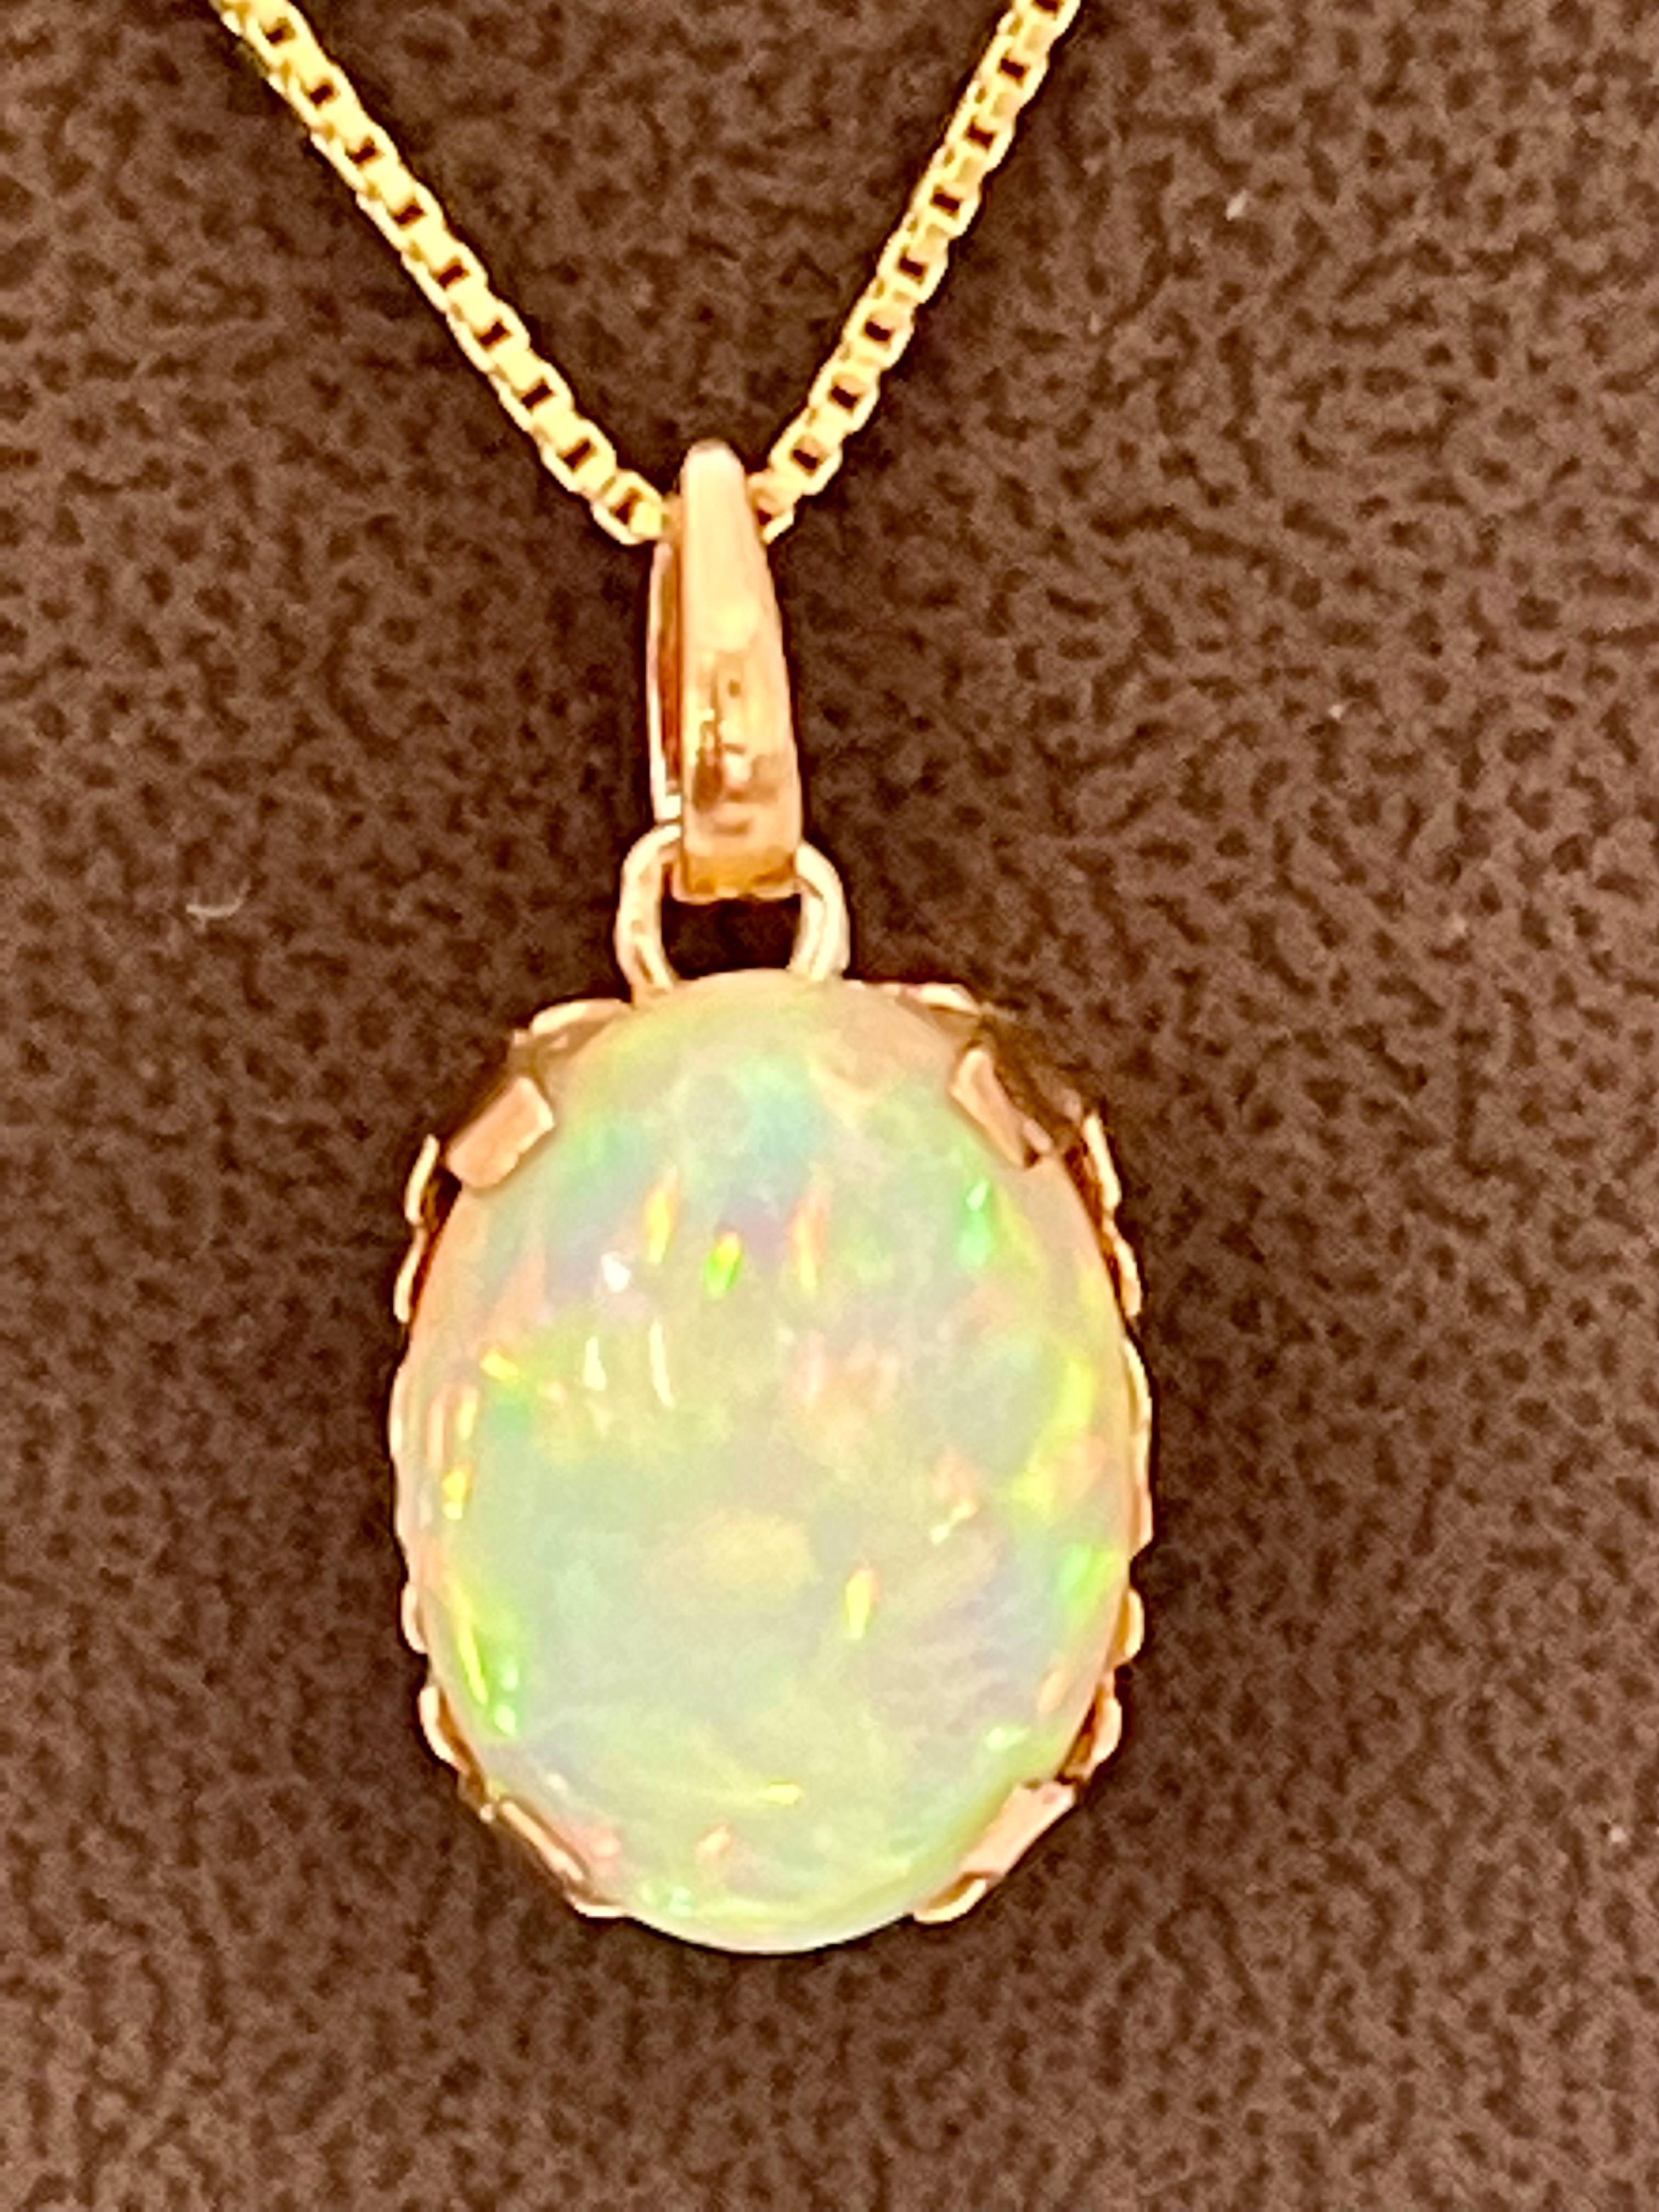 9 Carat Oval Ethiopian Opal Pendant / Necklace 18 Karat + 18 Kt Gold Chain 2